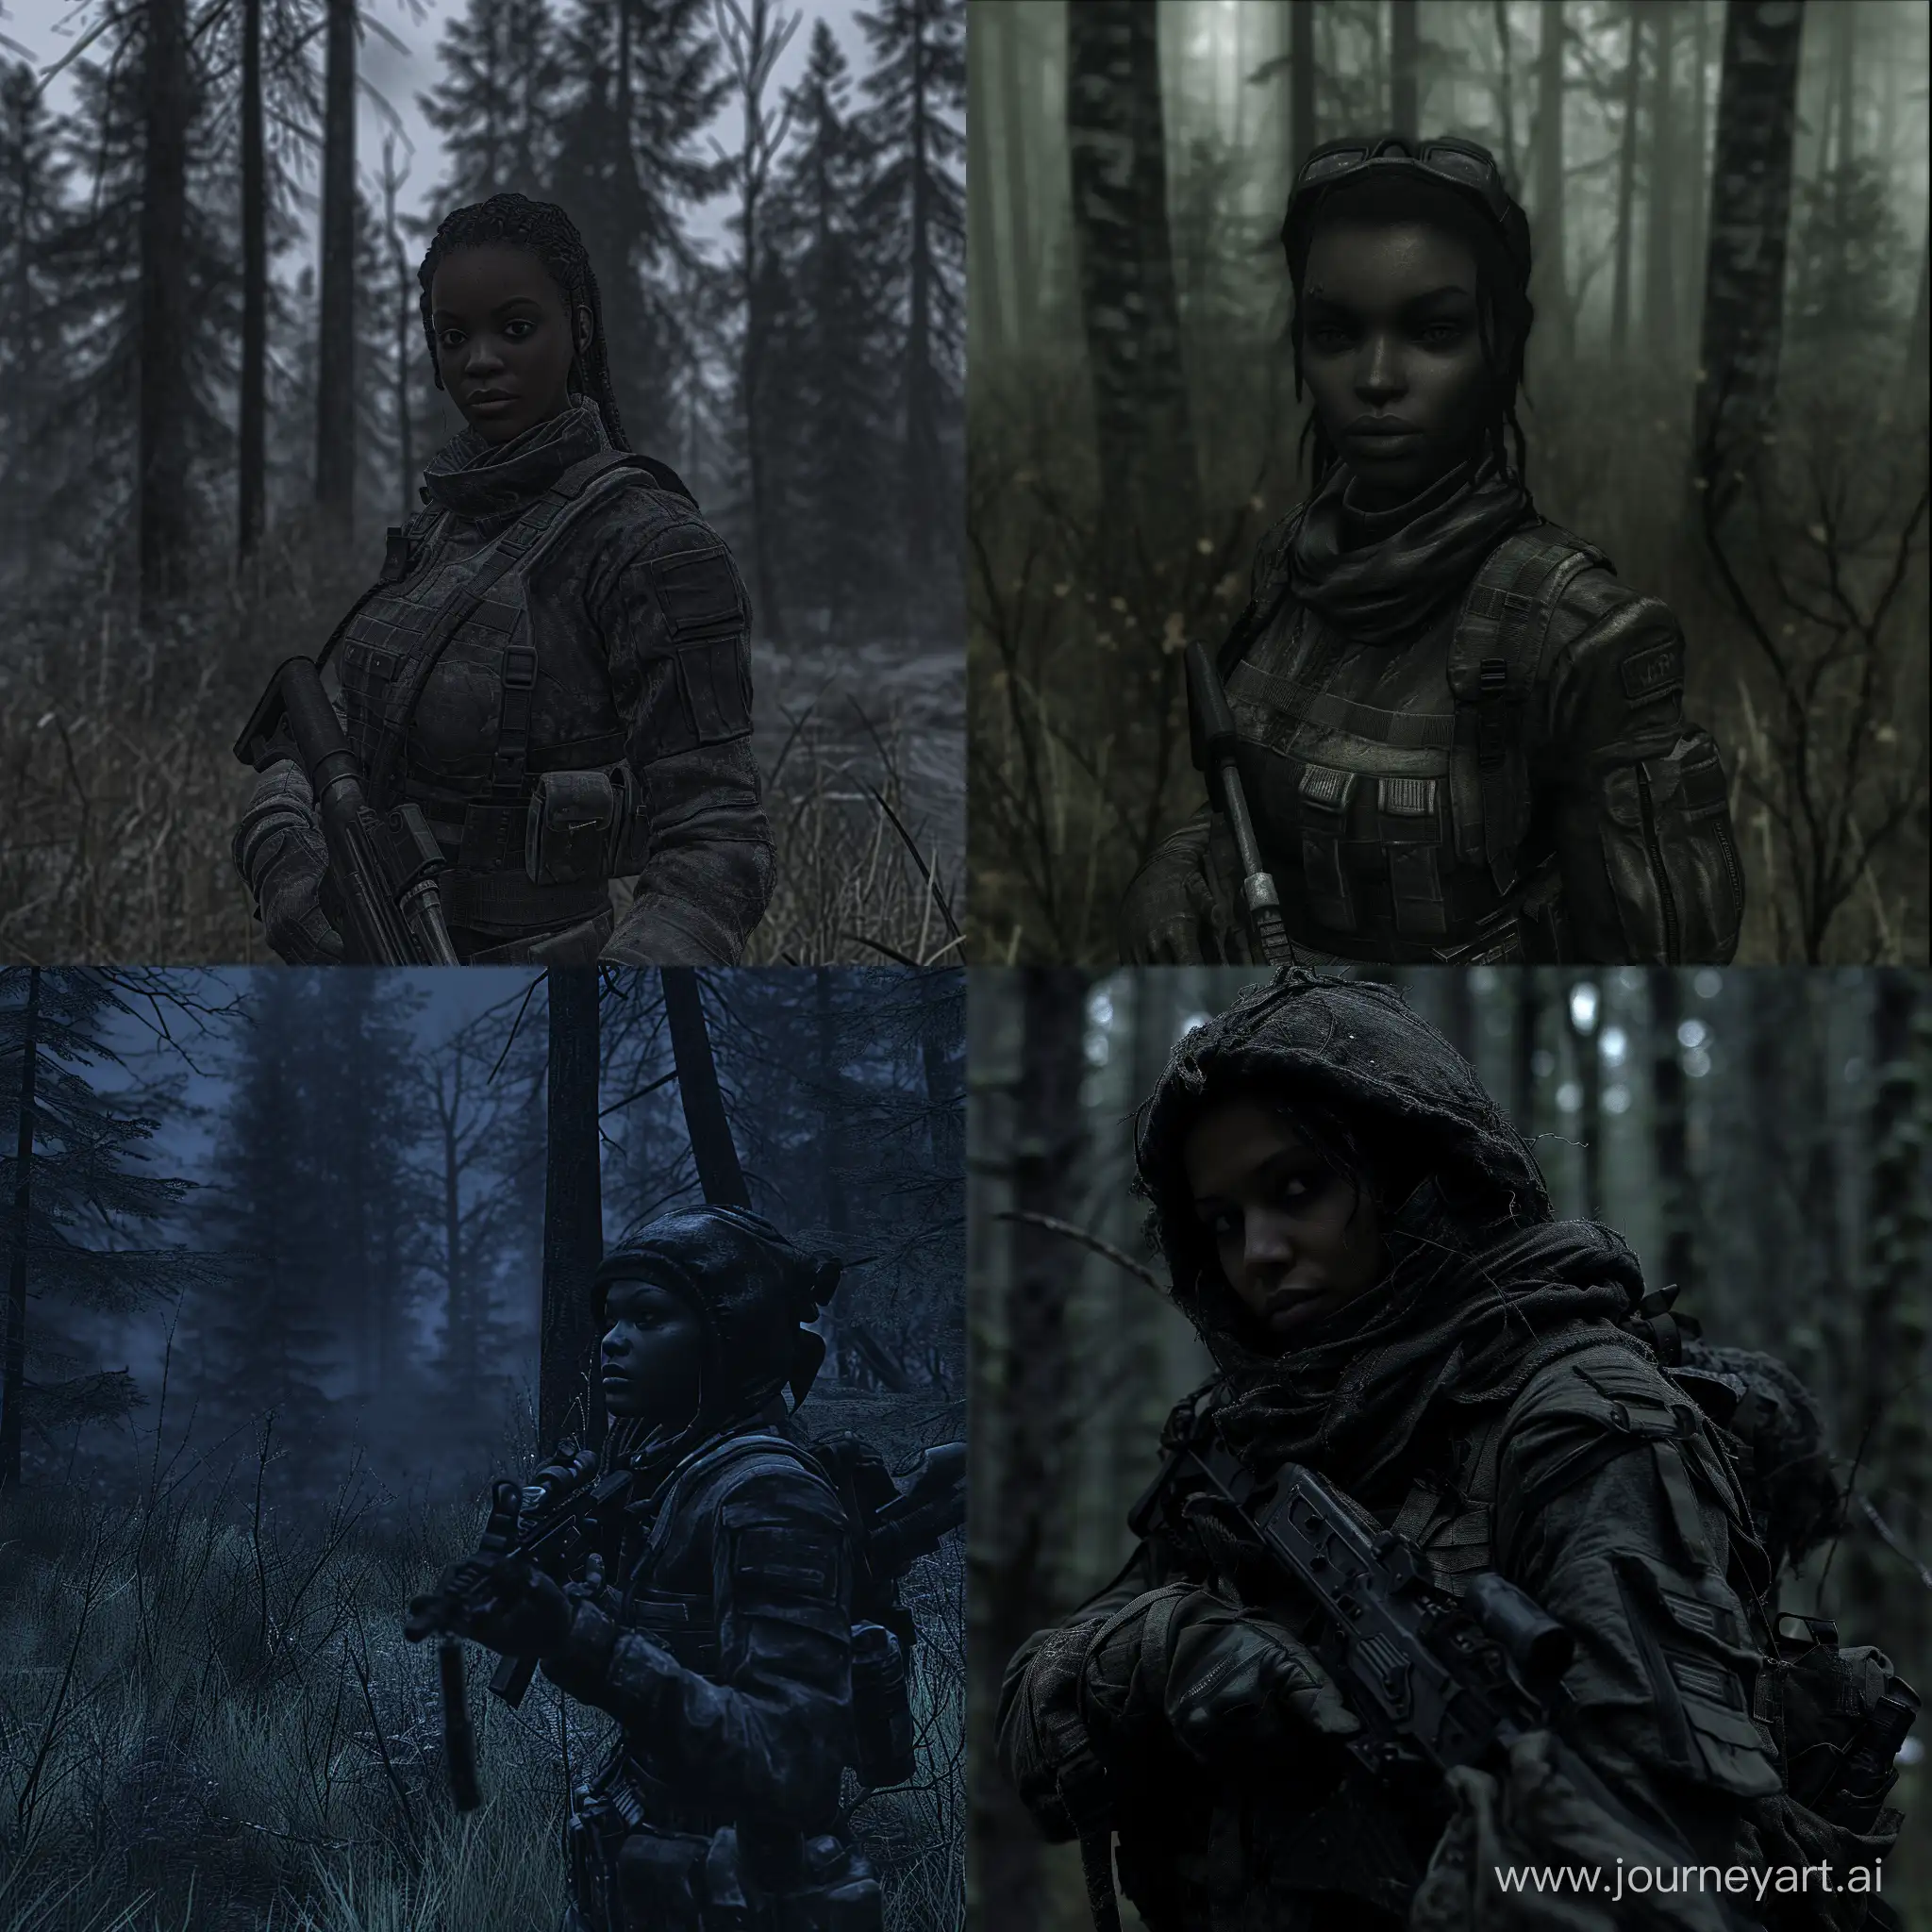 beautiful darkskinned Sheva Alomar in S.T.A.L.K.E.R as mercenary in darktactical equipment dark forest dead trees